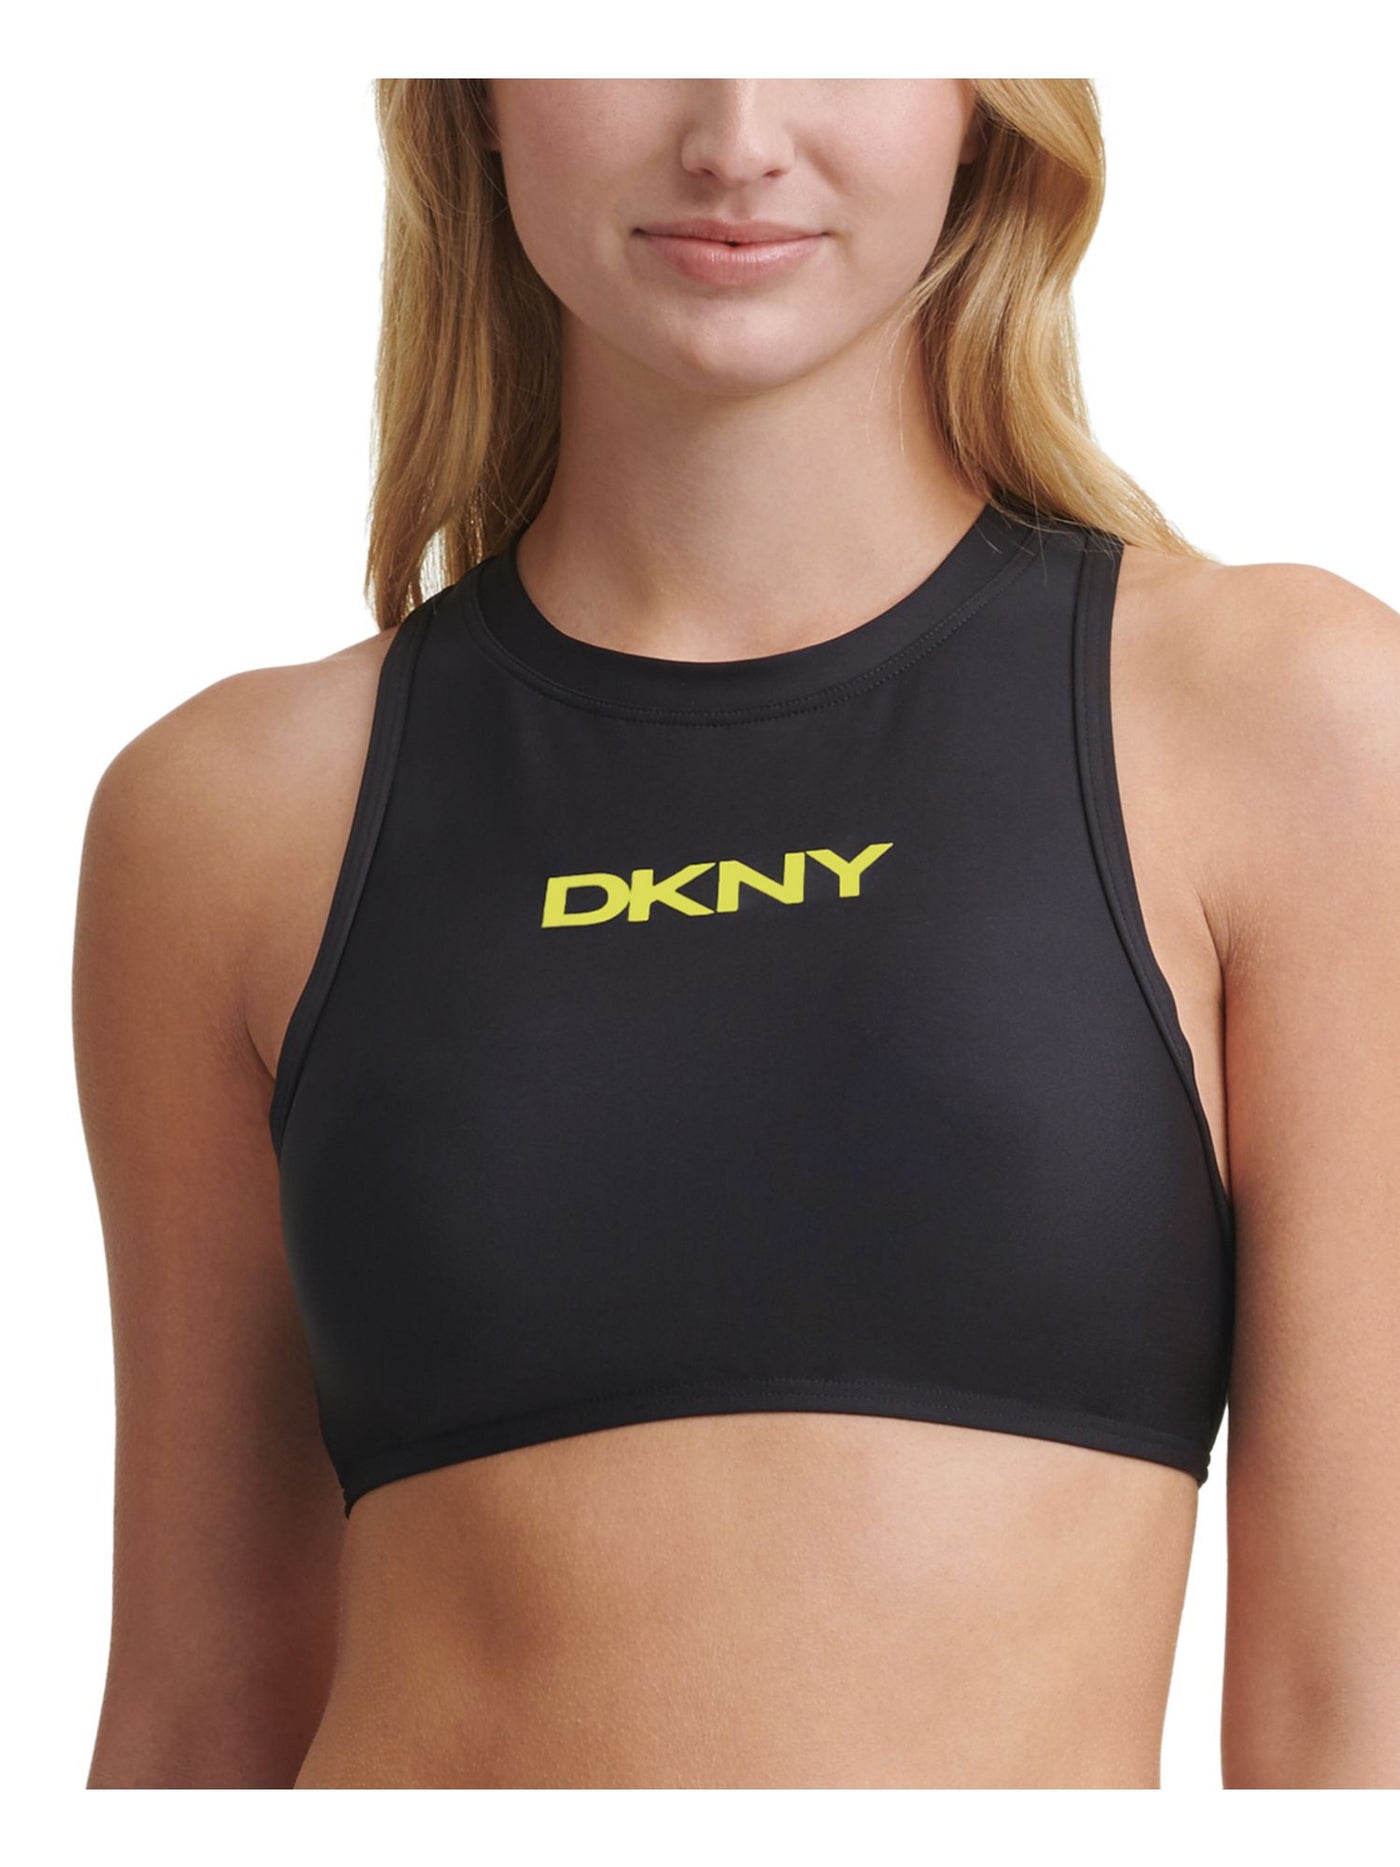 DKNY Women's Black Logo Stretch Zippered Sporty Swimsuit Top XXL